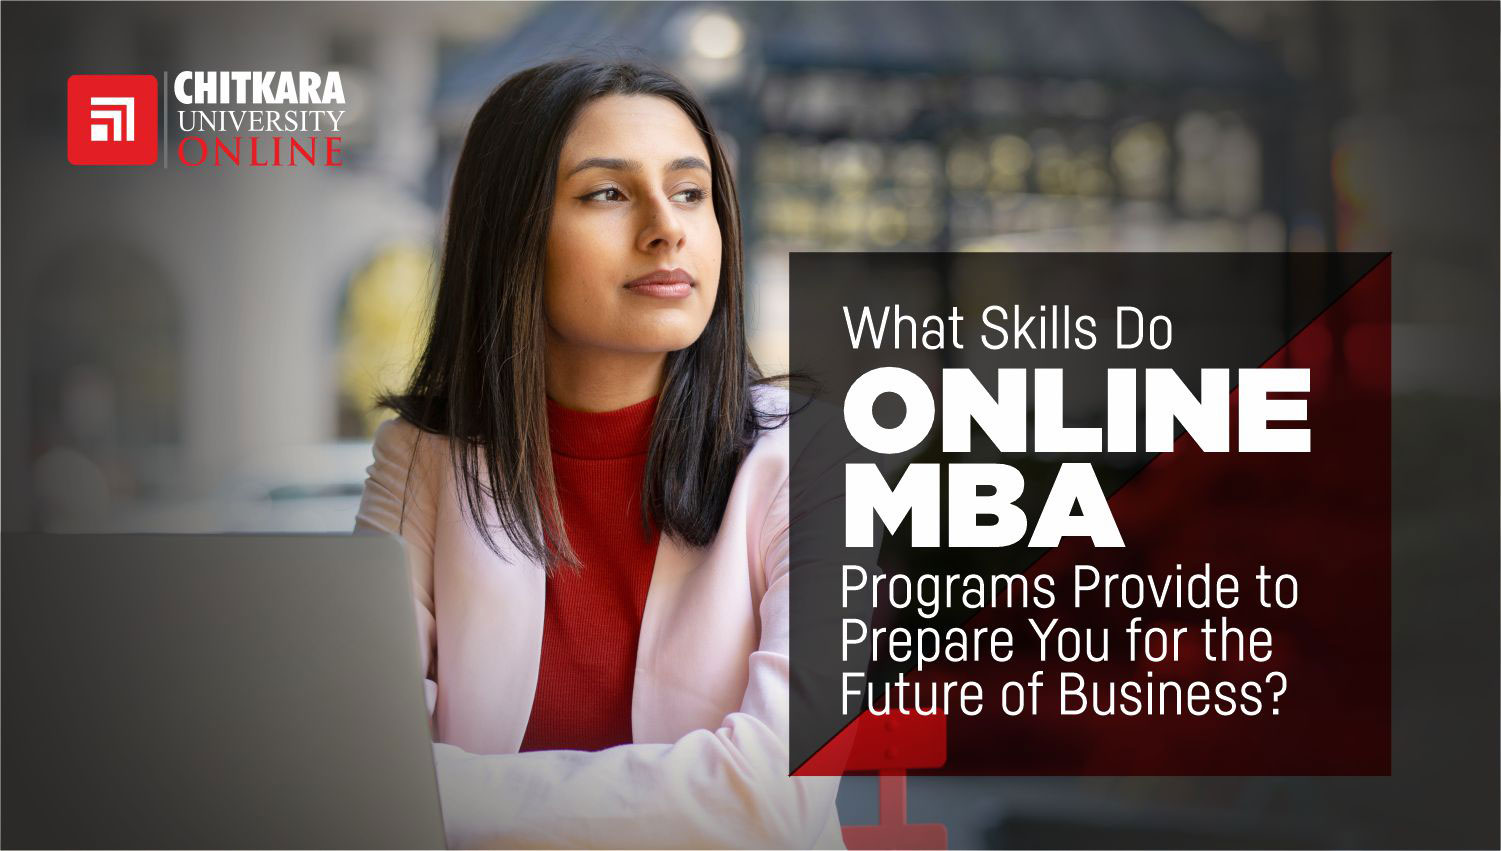 Skills Online MBA Program